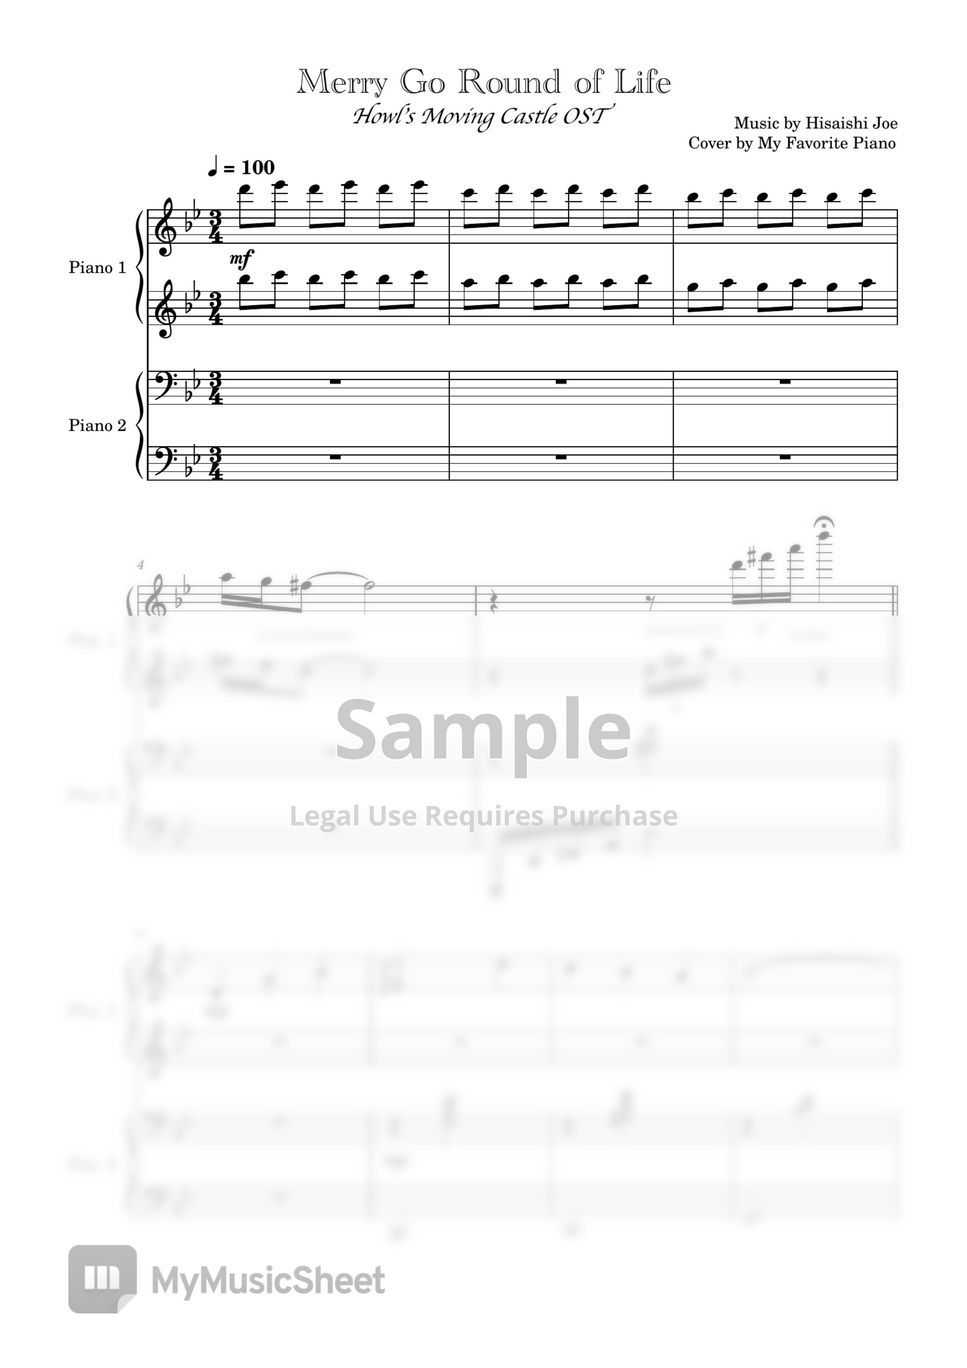 하울의 움직이는 성 OST - 人生のメリ-ゴ-ランド (인생의 회전목마) (4 Hands) by My Favorite Piano